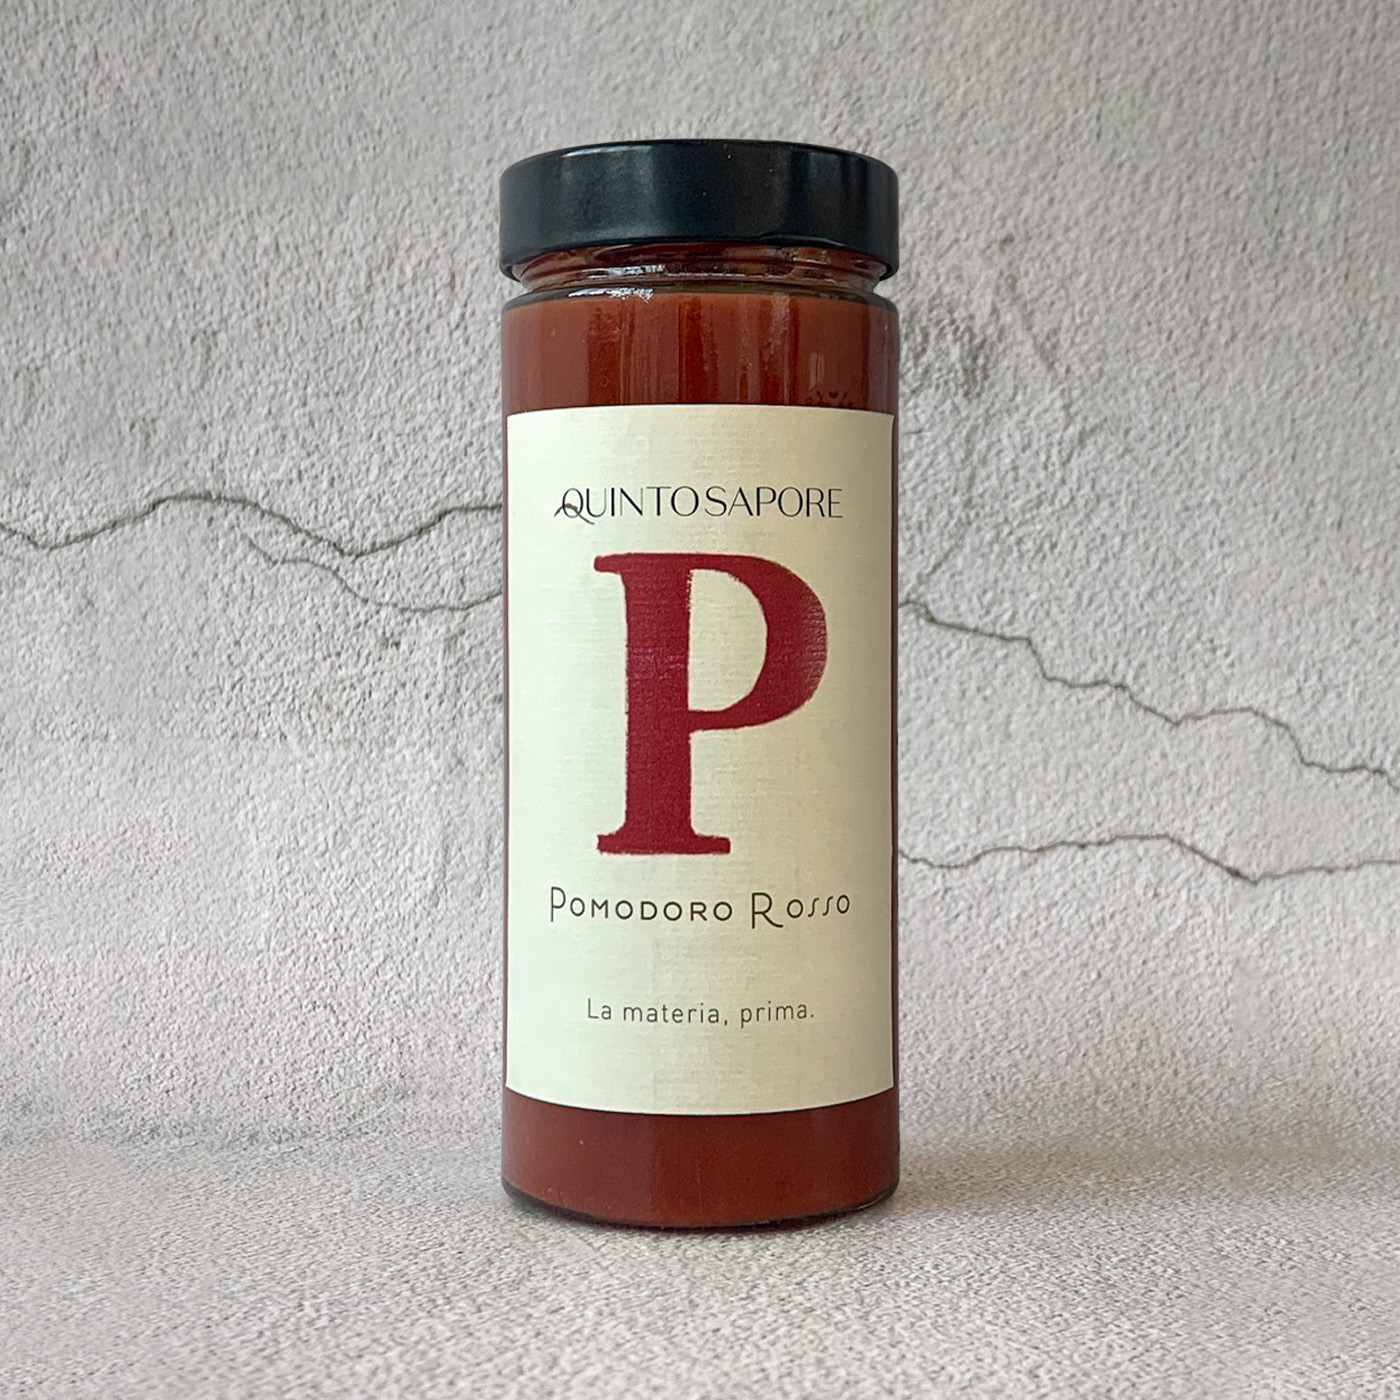 Santocielo - Product Carousel - Quintosapore_Passata pomodori rossi